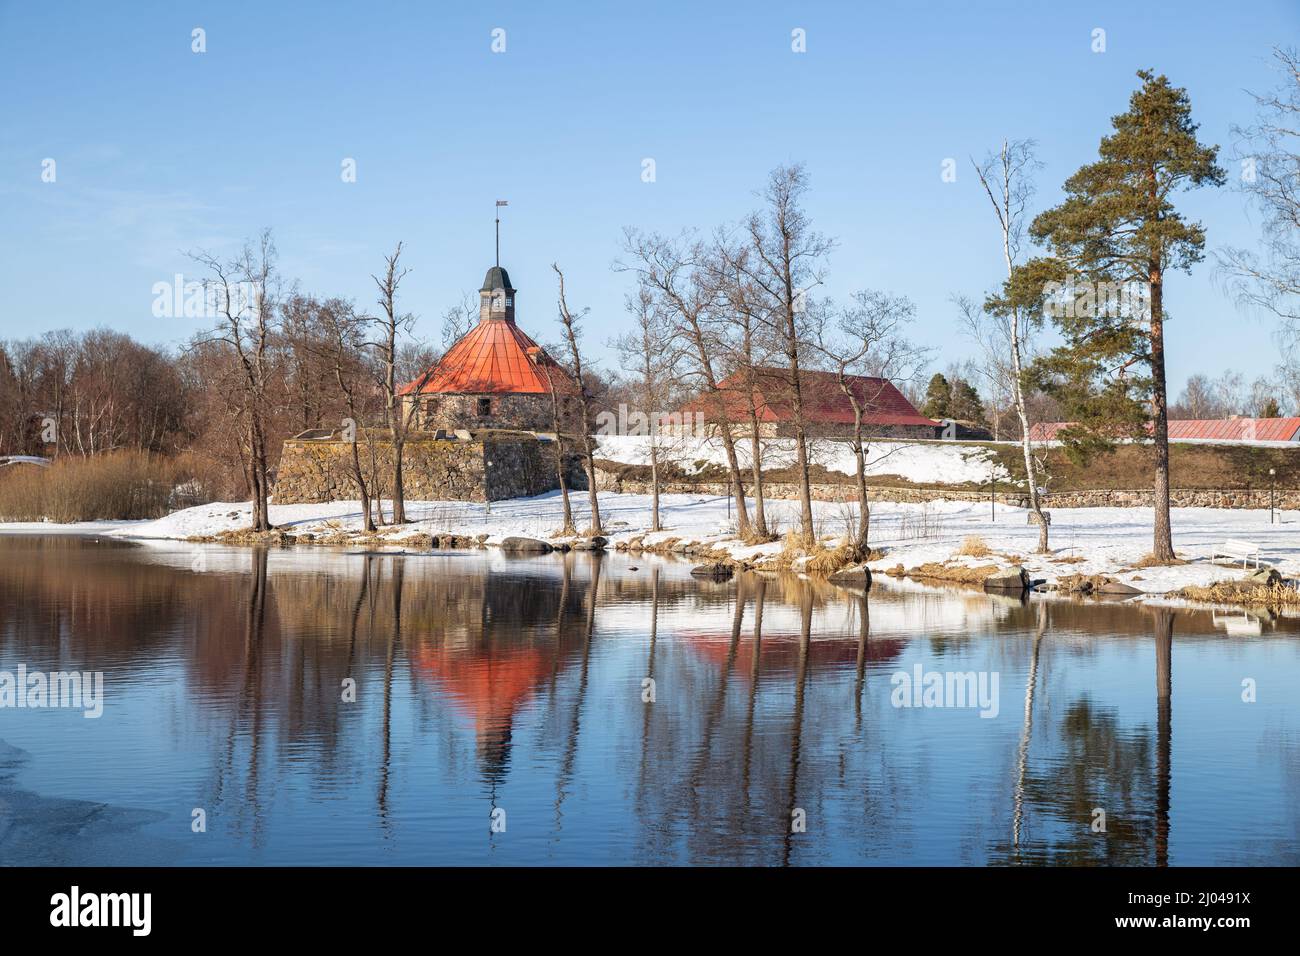 L'ancienne forteresse de Korela se reflète dans l'eau de la Vuoksa. Paysage naturel du début du printemps. Priozersk, région de Leningrad, Russie Banque D'Images